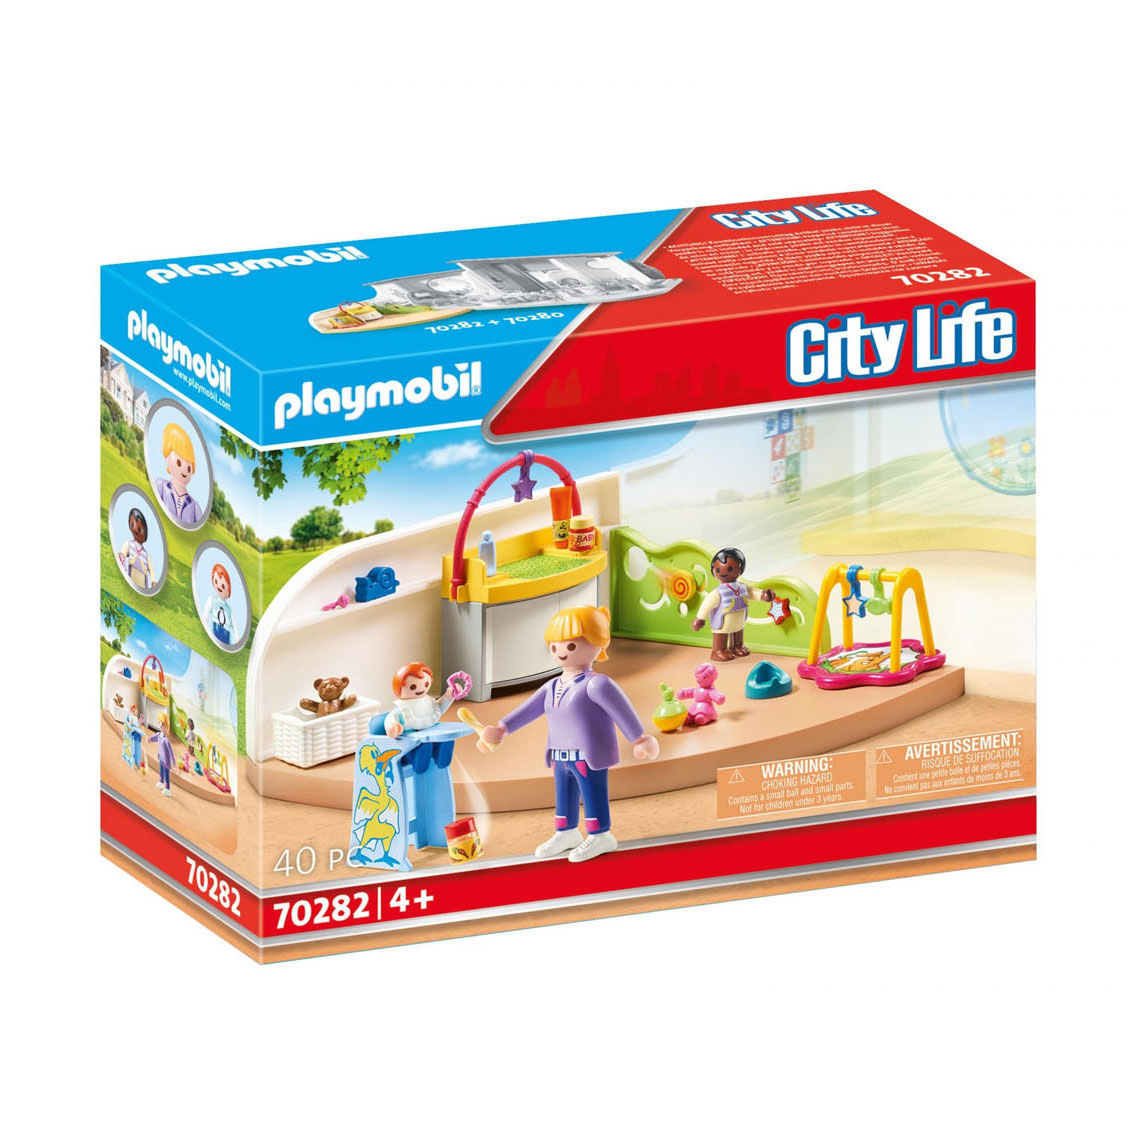 PLAYMOBIL City Life 70988 Jugendzimmer, Spielzeug für Kinder ab 4 Jahren:  : Spielzeug